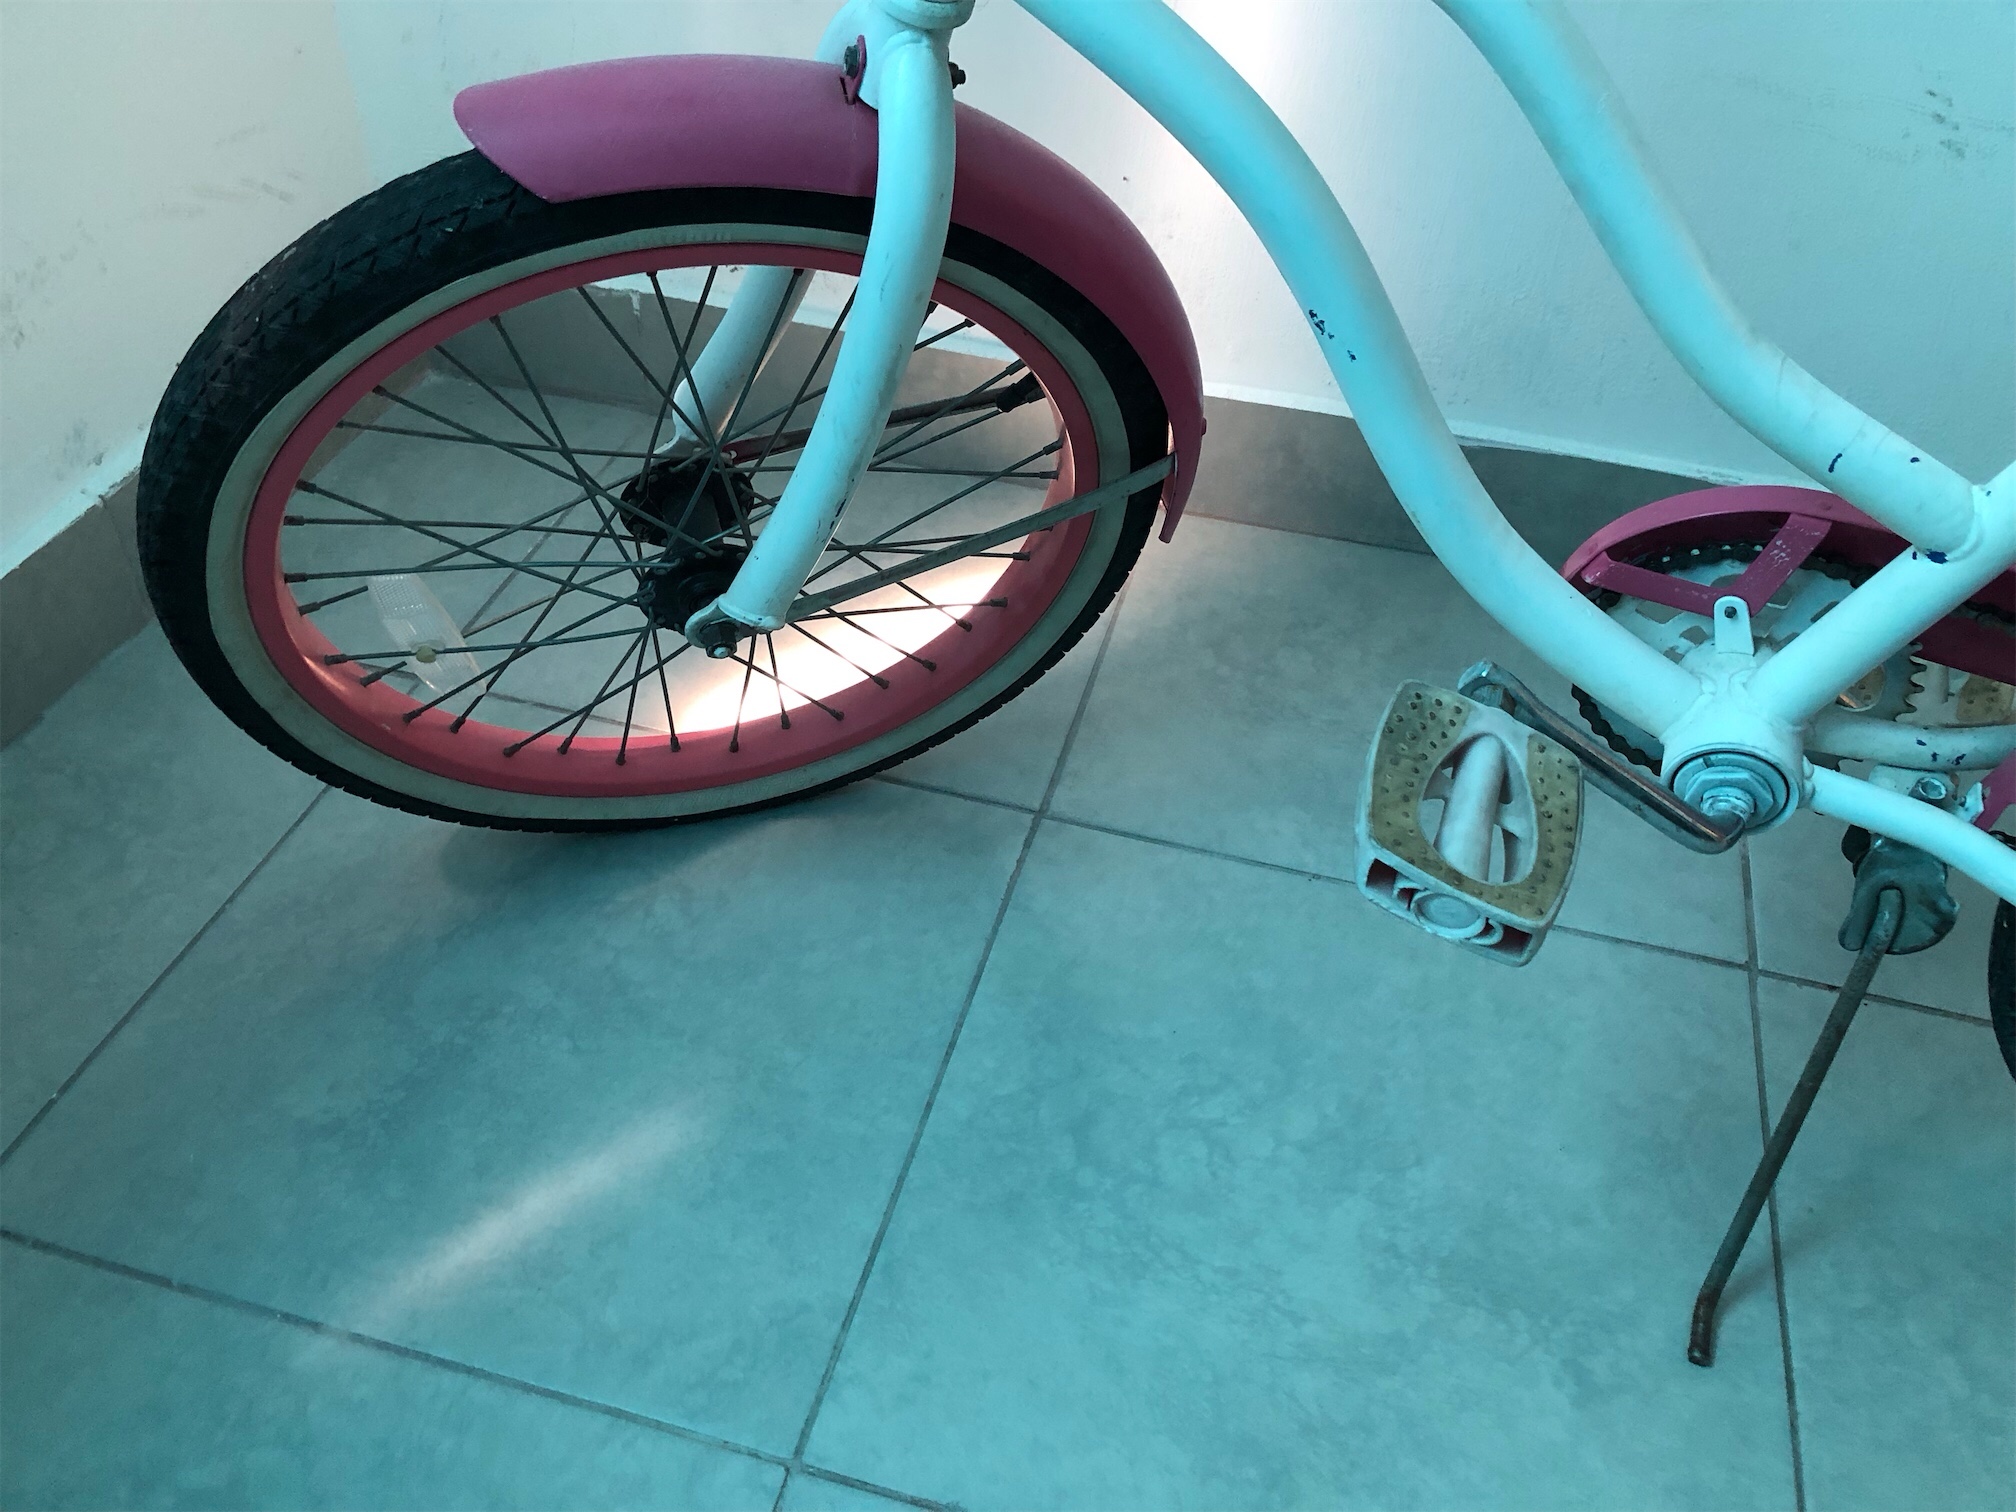 bicicletas y accesorios - venBicicleta una aro 22” rd$3,000 Rosada
Higuey 0